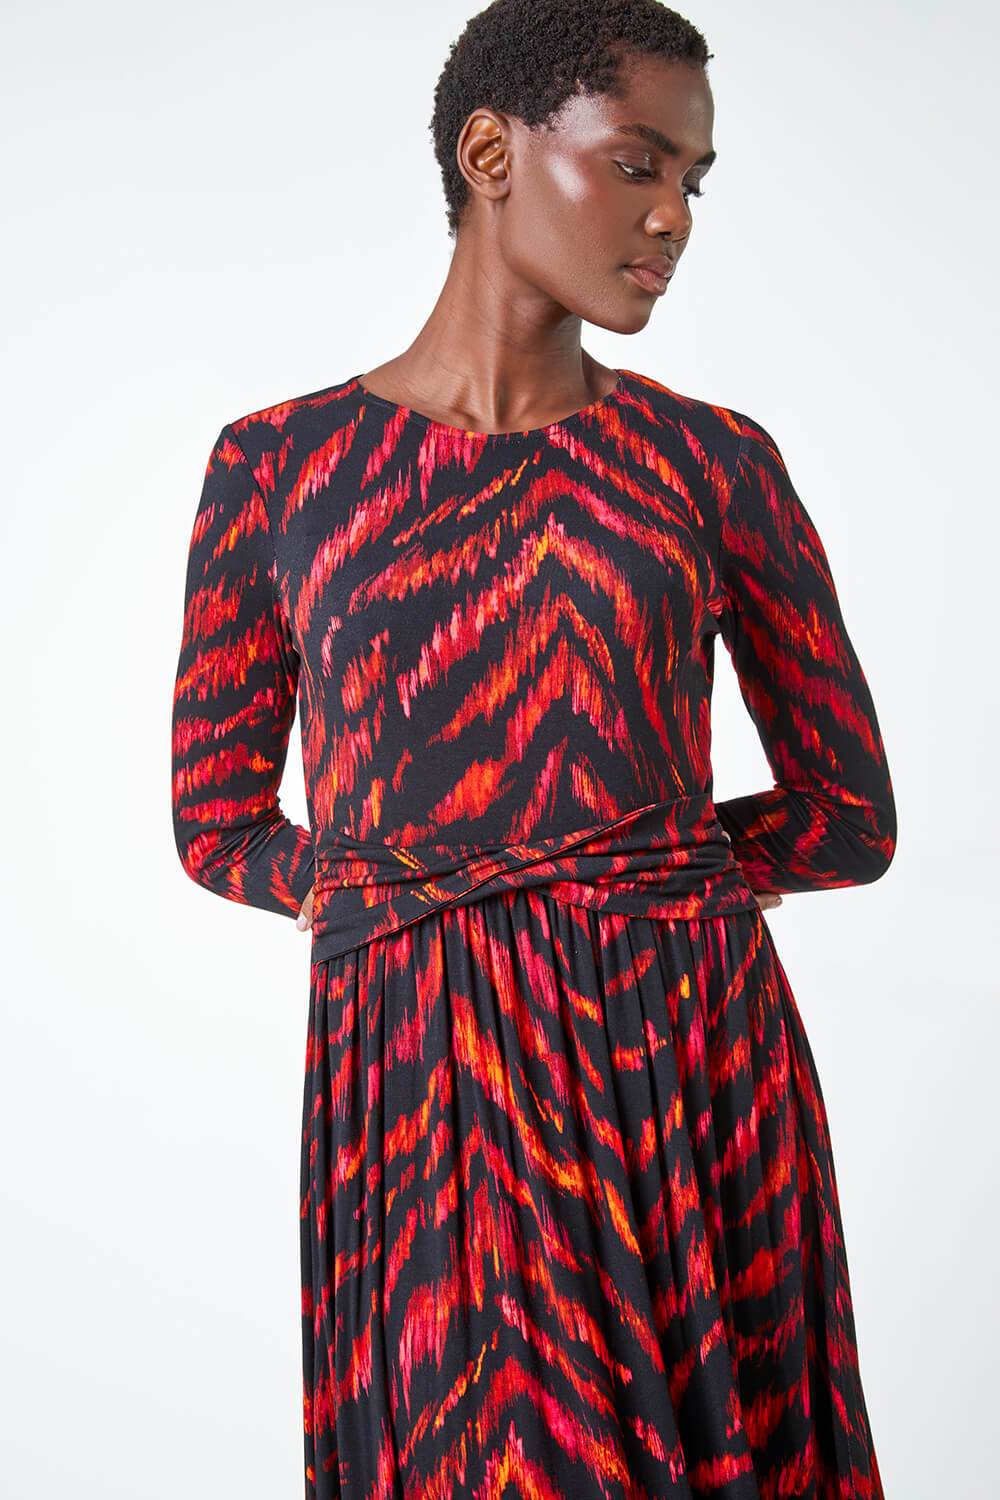 PINK Tiger Print Twist Waist Midi Stretch Dress, Image 4 of 5